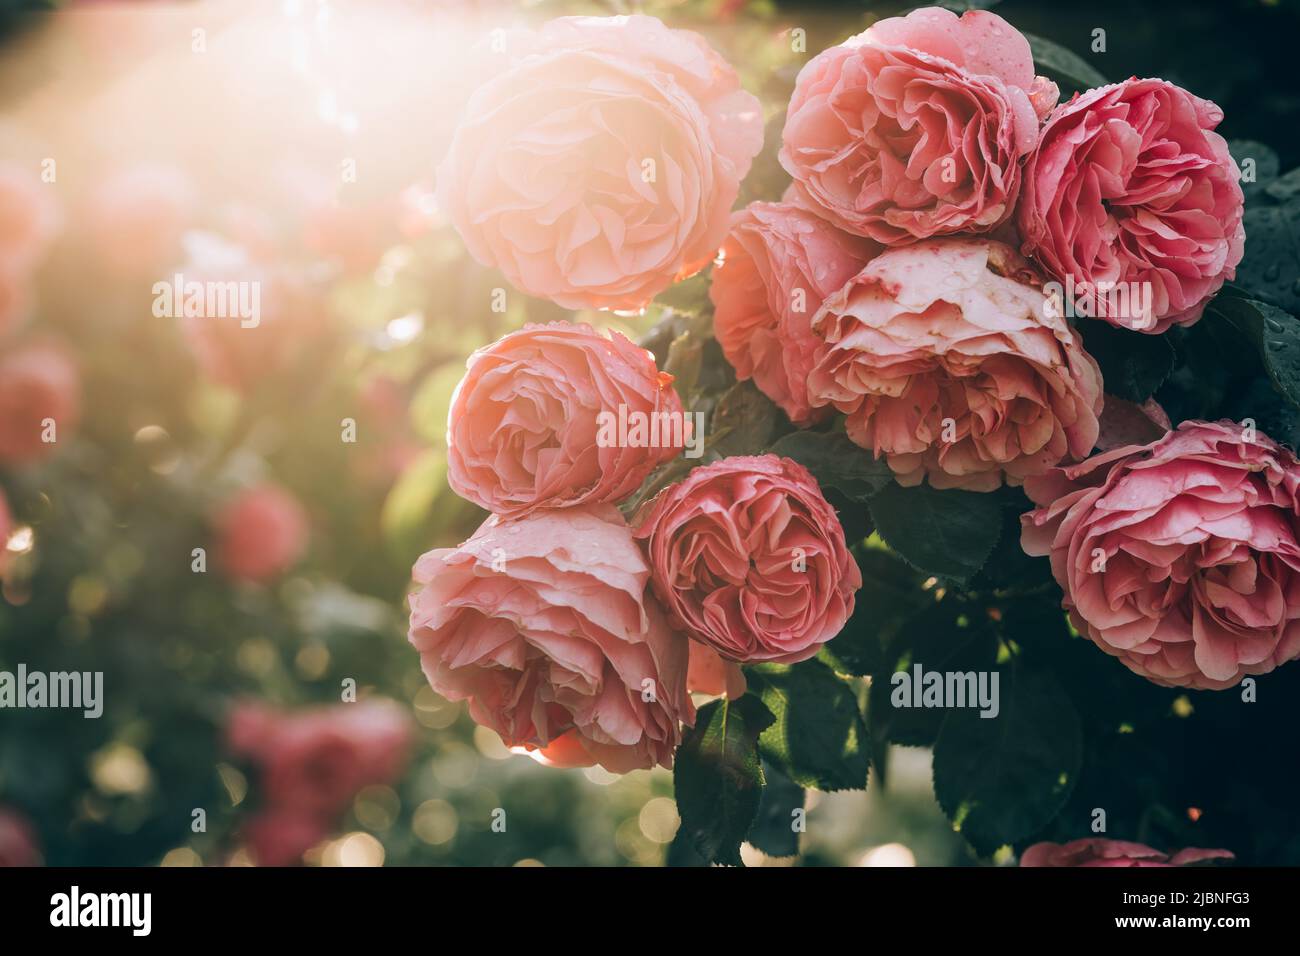 Wunderschöne rosa Rosen in den frühen Morgenstunden im Wiener Hofburg Garten. Natürliche Aufnahme mit Hintergrundbeleuchtung. Natur, Sommer, Reisekonzept. Gartenarbeit Stockfoto